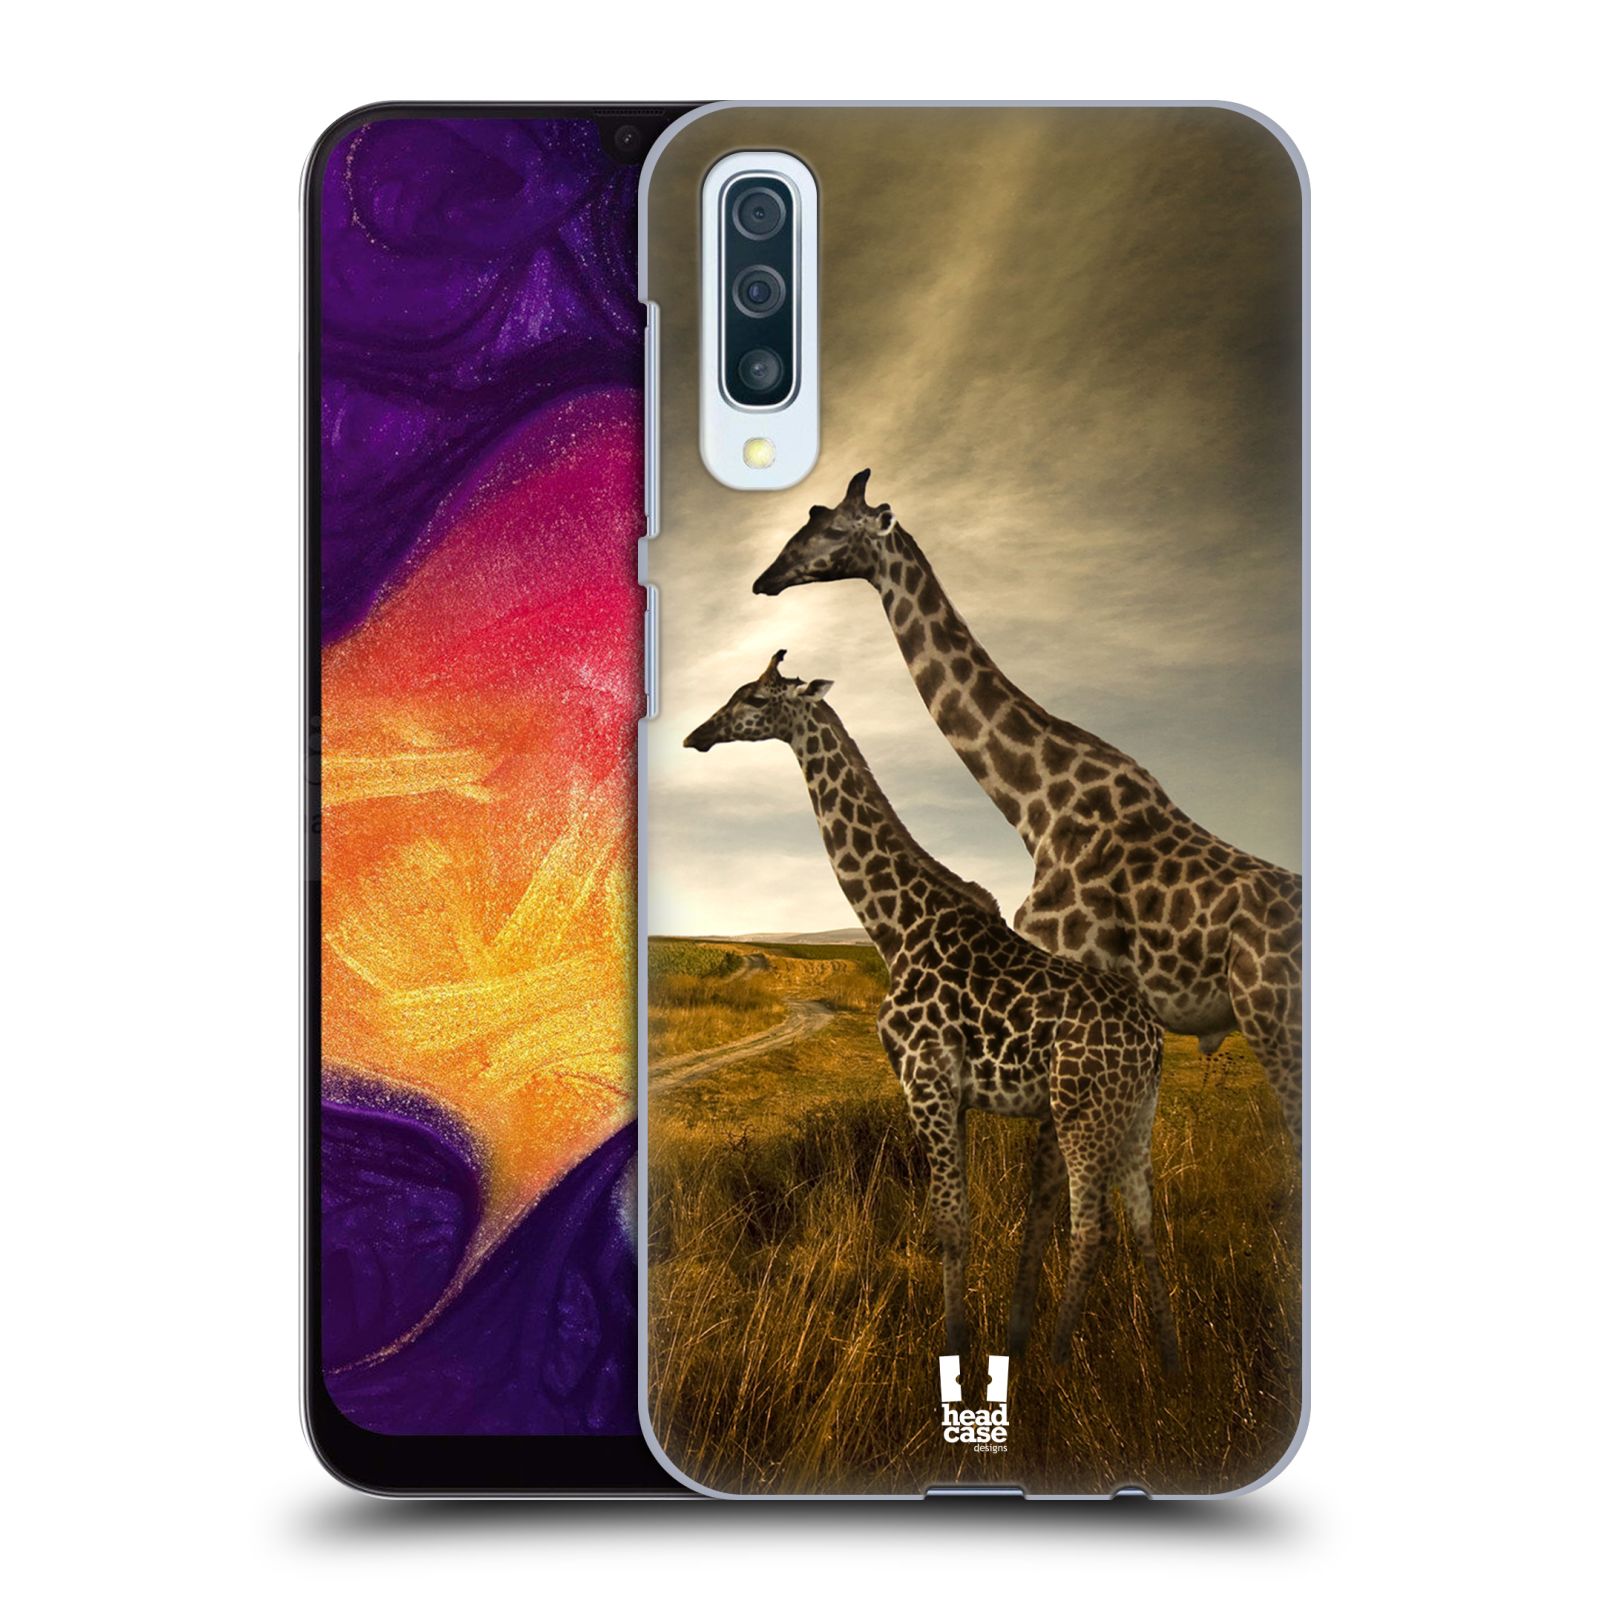 Zadní obal pro mobil Samsung Galaxy A50 / A30s - HEAD CASE - Svět zvířat žirafy